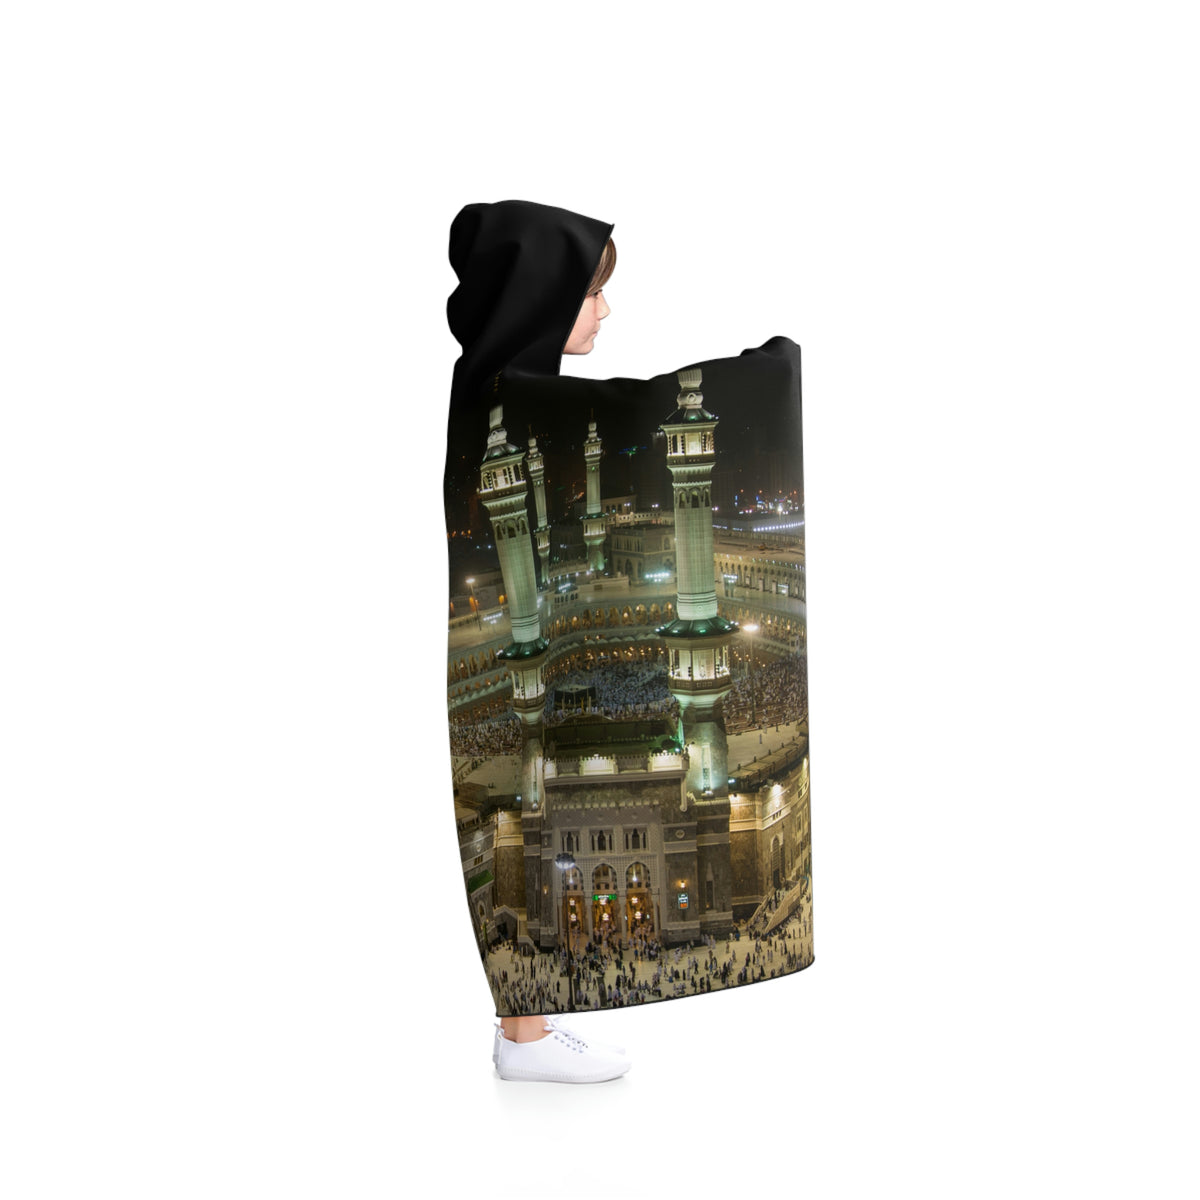 Elmasjed Alharam Hooded Blanket